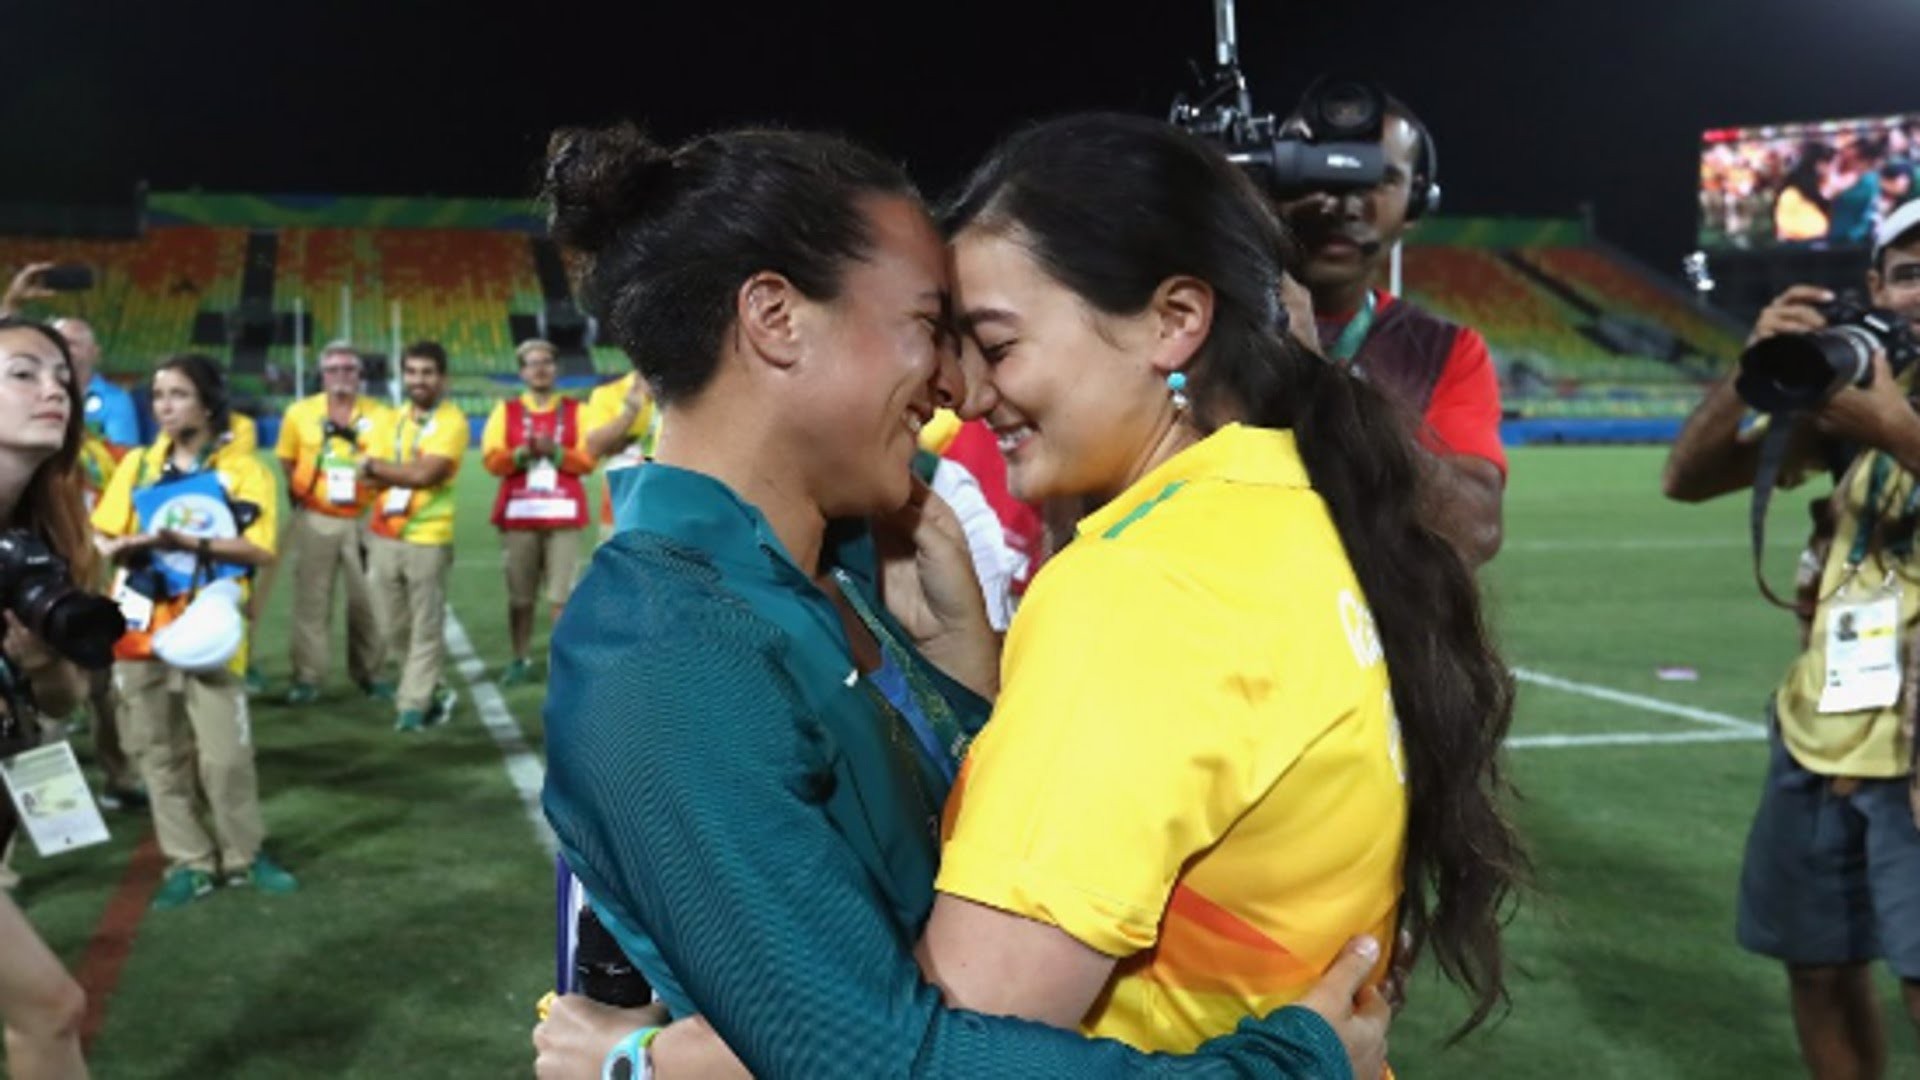 La voluntaria Marjorie Enya propone matrimonio a la jugadora de rugby Isadora Cerullo de Brasil en el Deodoro Stadium.